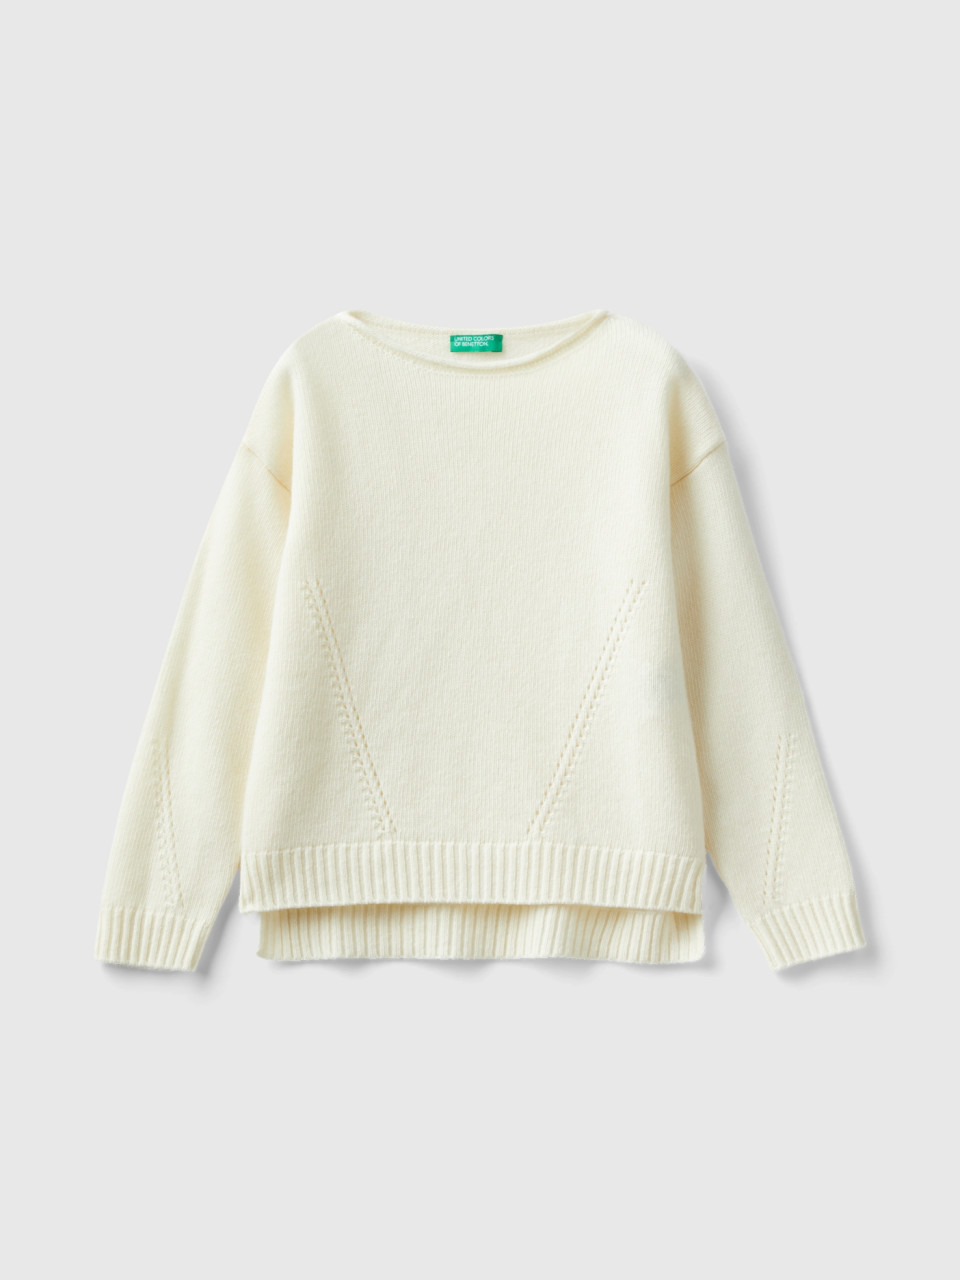 Benetton, Knit Sweater With Playful Stitching, Creamy White, Kids